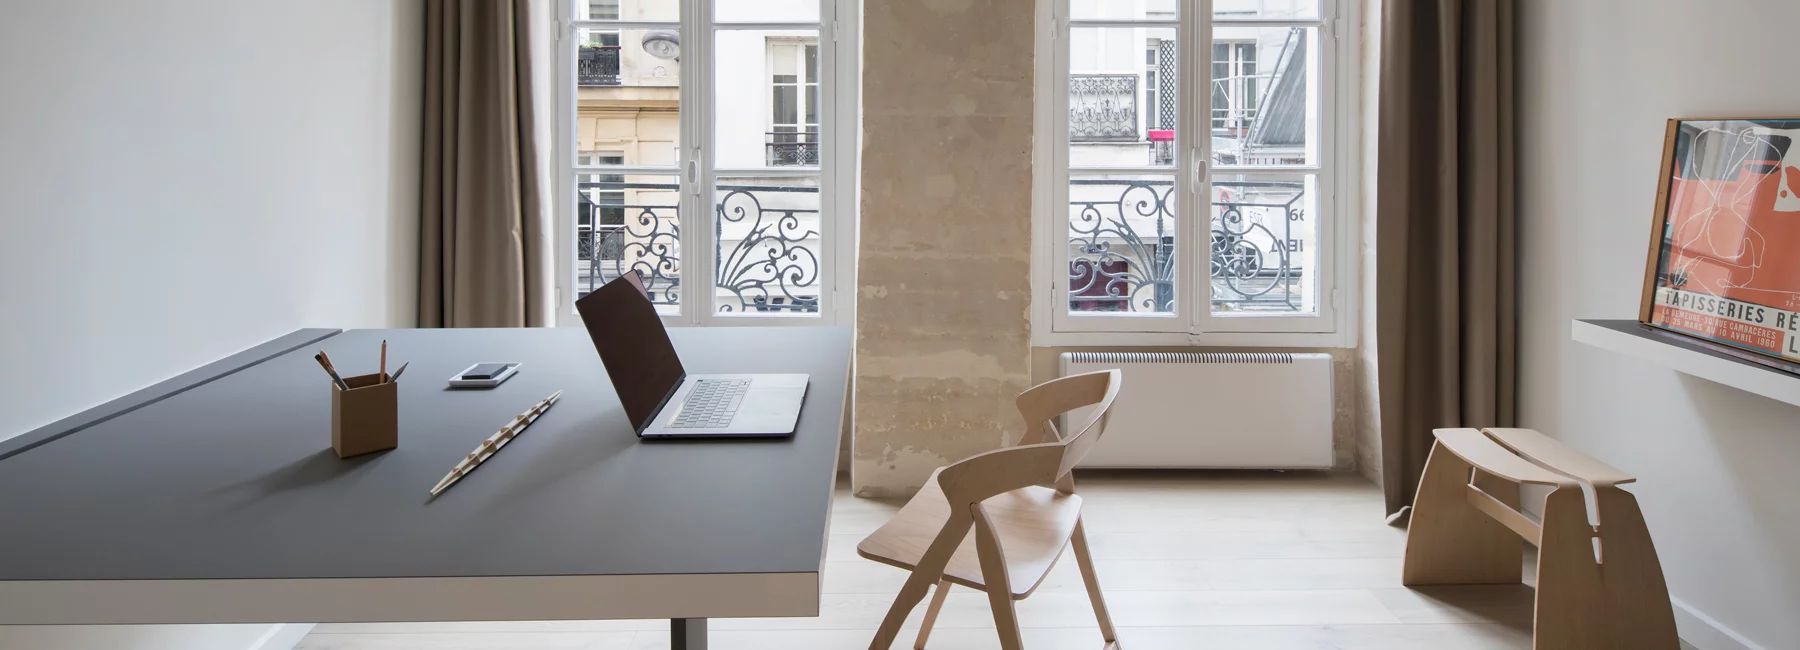 巴黎16平米微公寓改造成工作空间